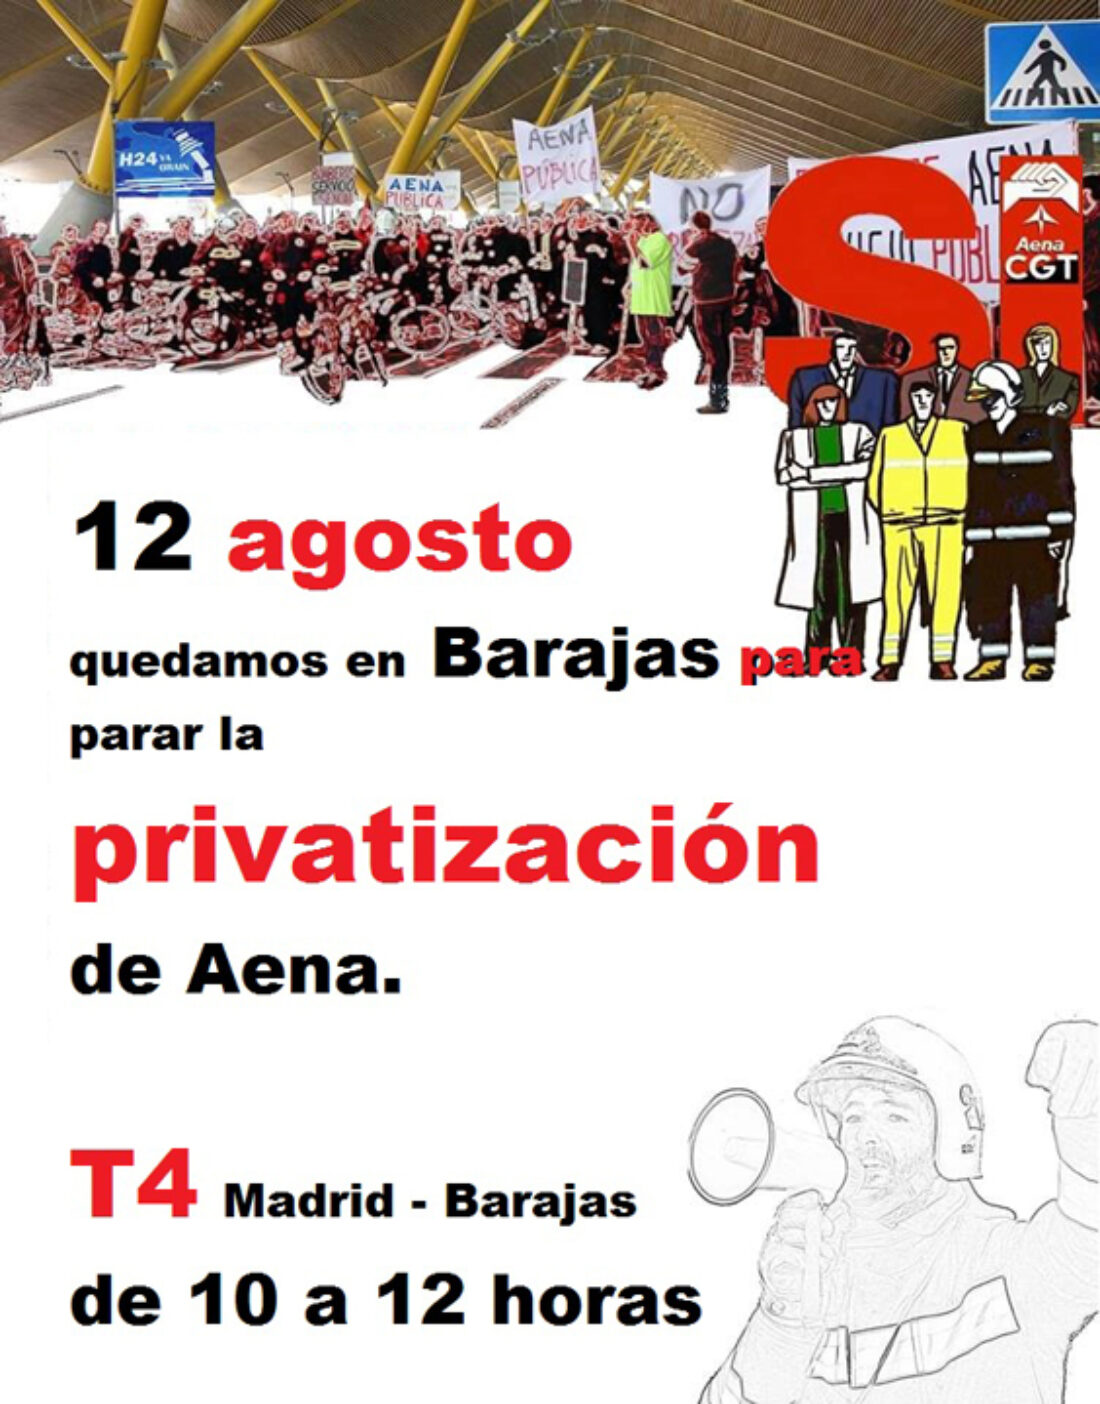 12 agosto quedamos en Barajas para parar la privatización de Aena. T4